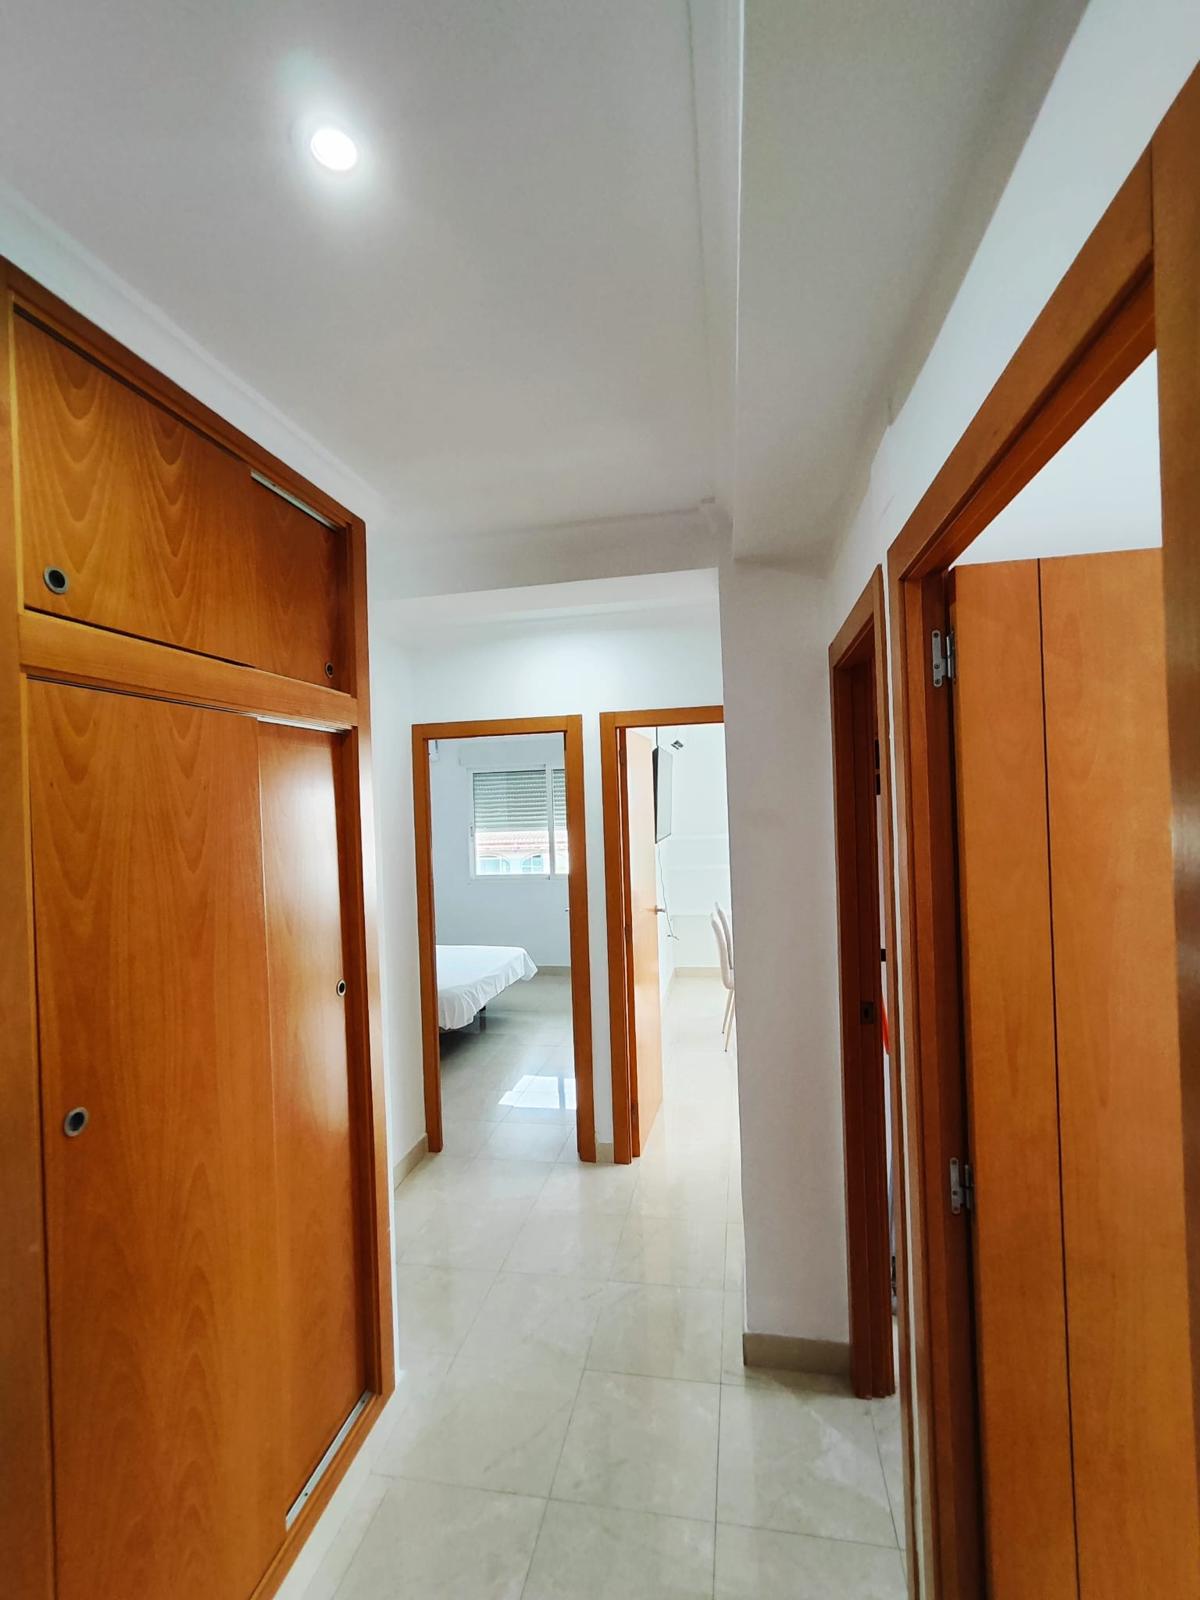 Appartement met 2 slaapkamers te koop aan het strand van het zandstrand van Javea